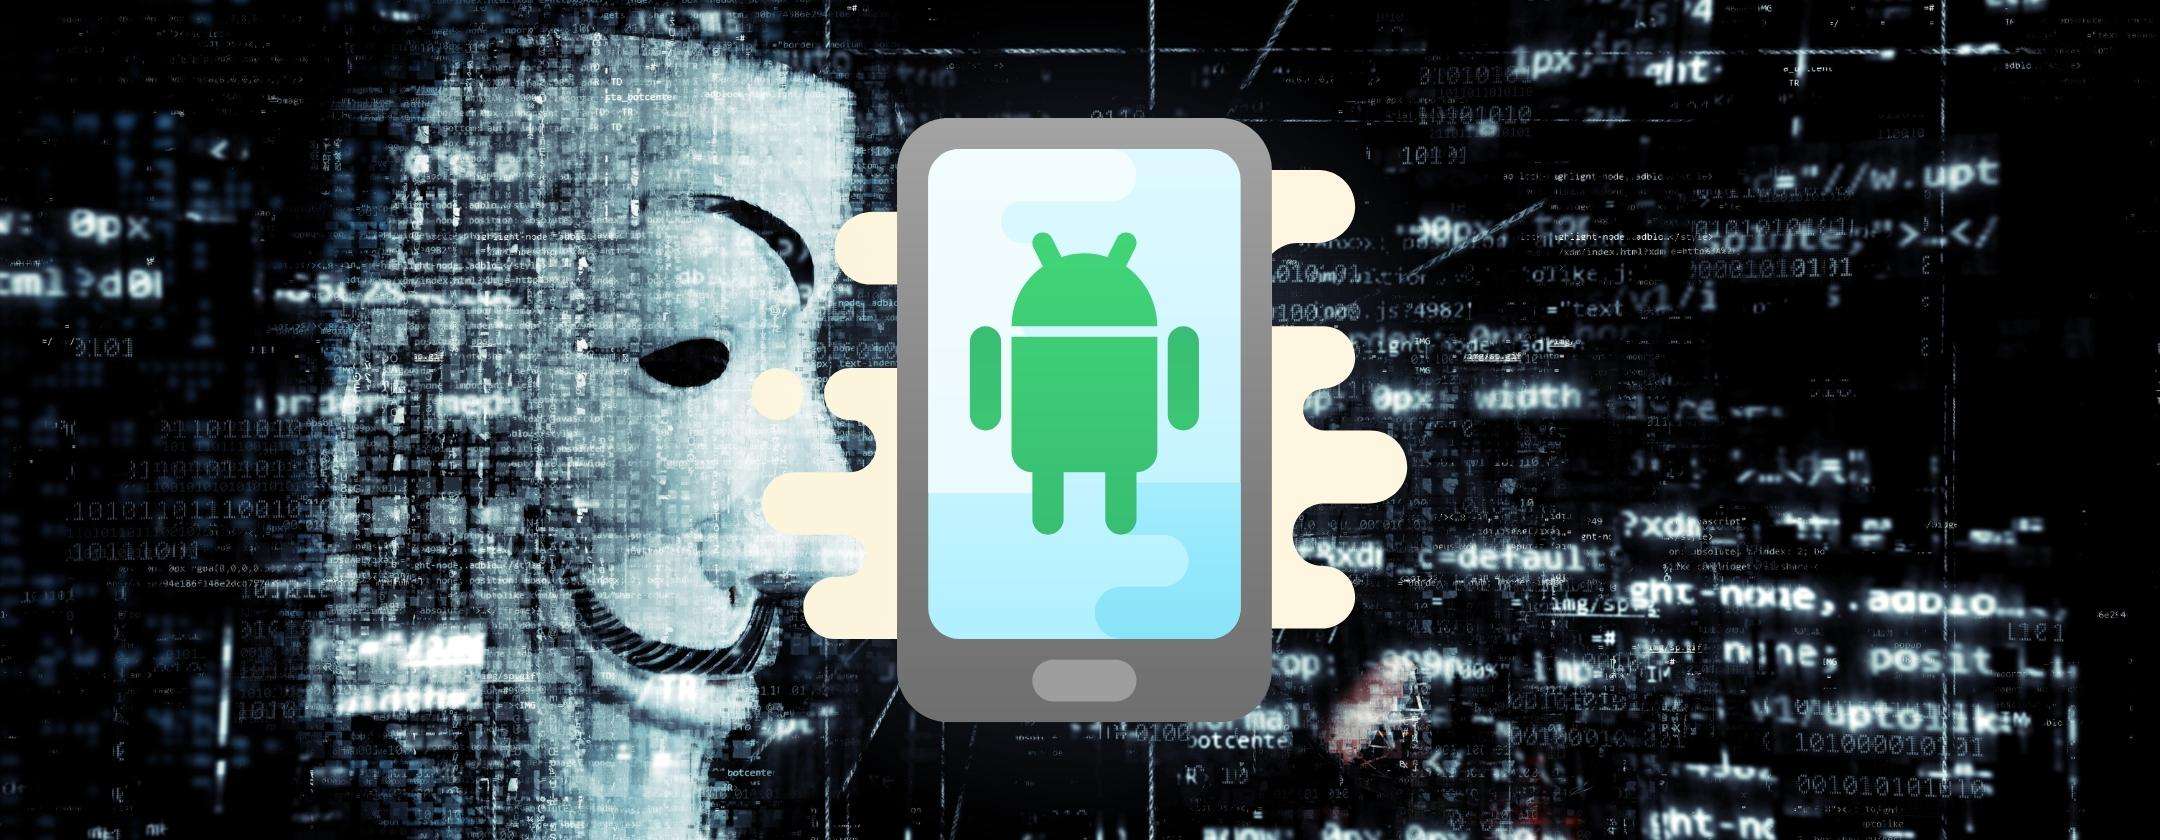 Android sotto attacco: arriva in Italia il trojan bancario Coper